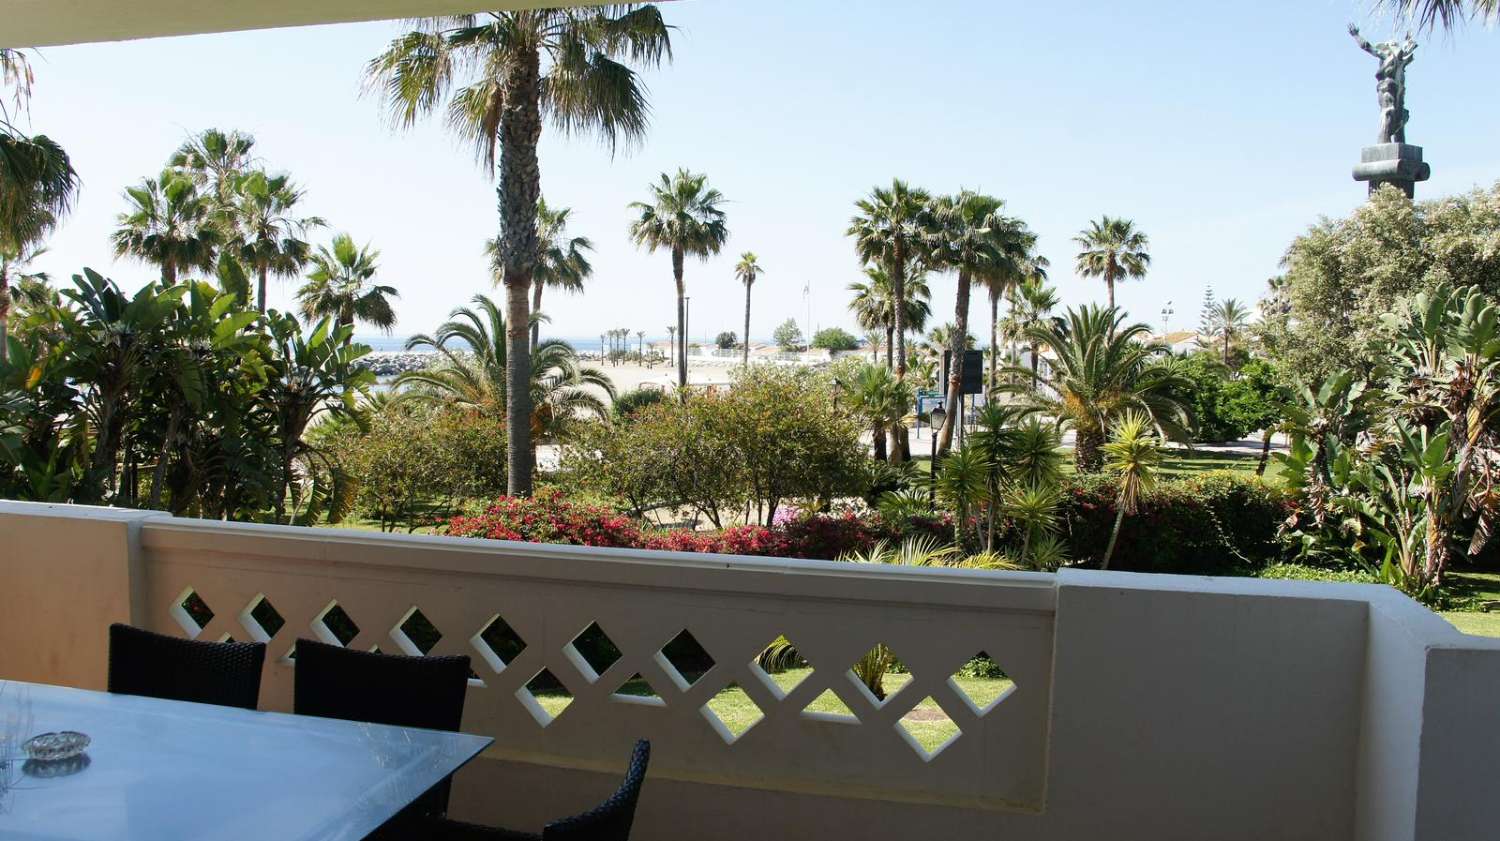 Casa vacanze. Appartamento con vista sul mare. Puerto Banus, Marbella.